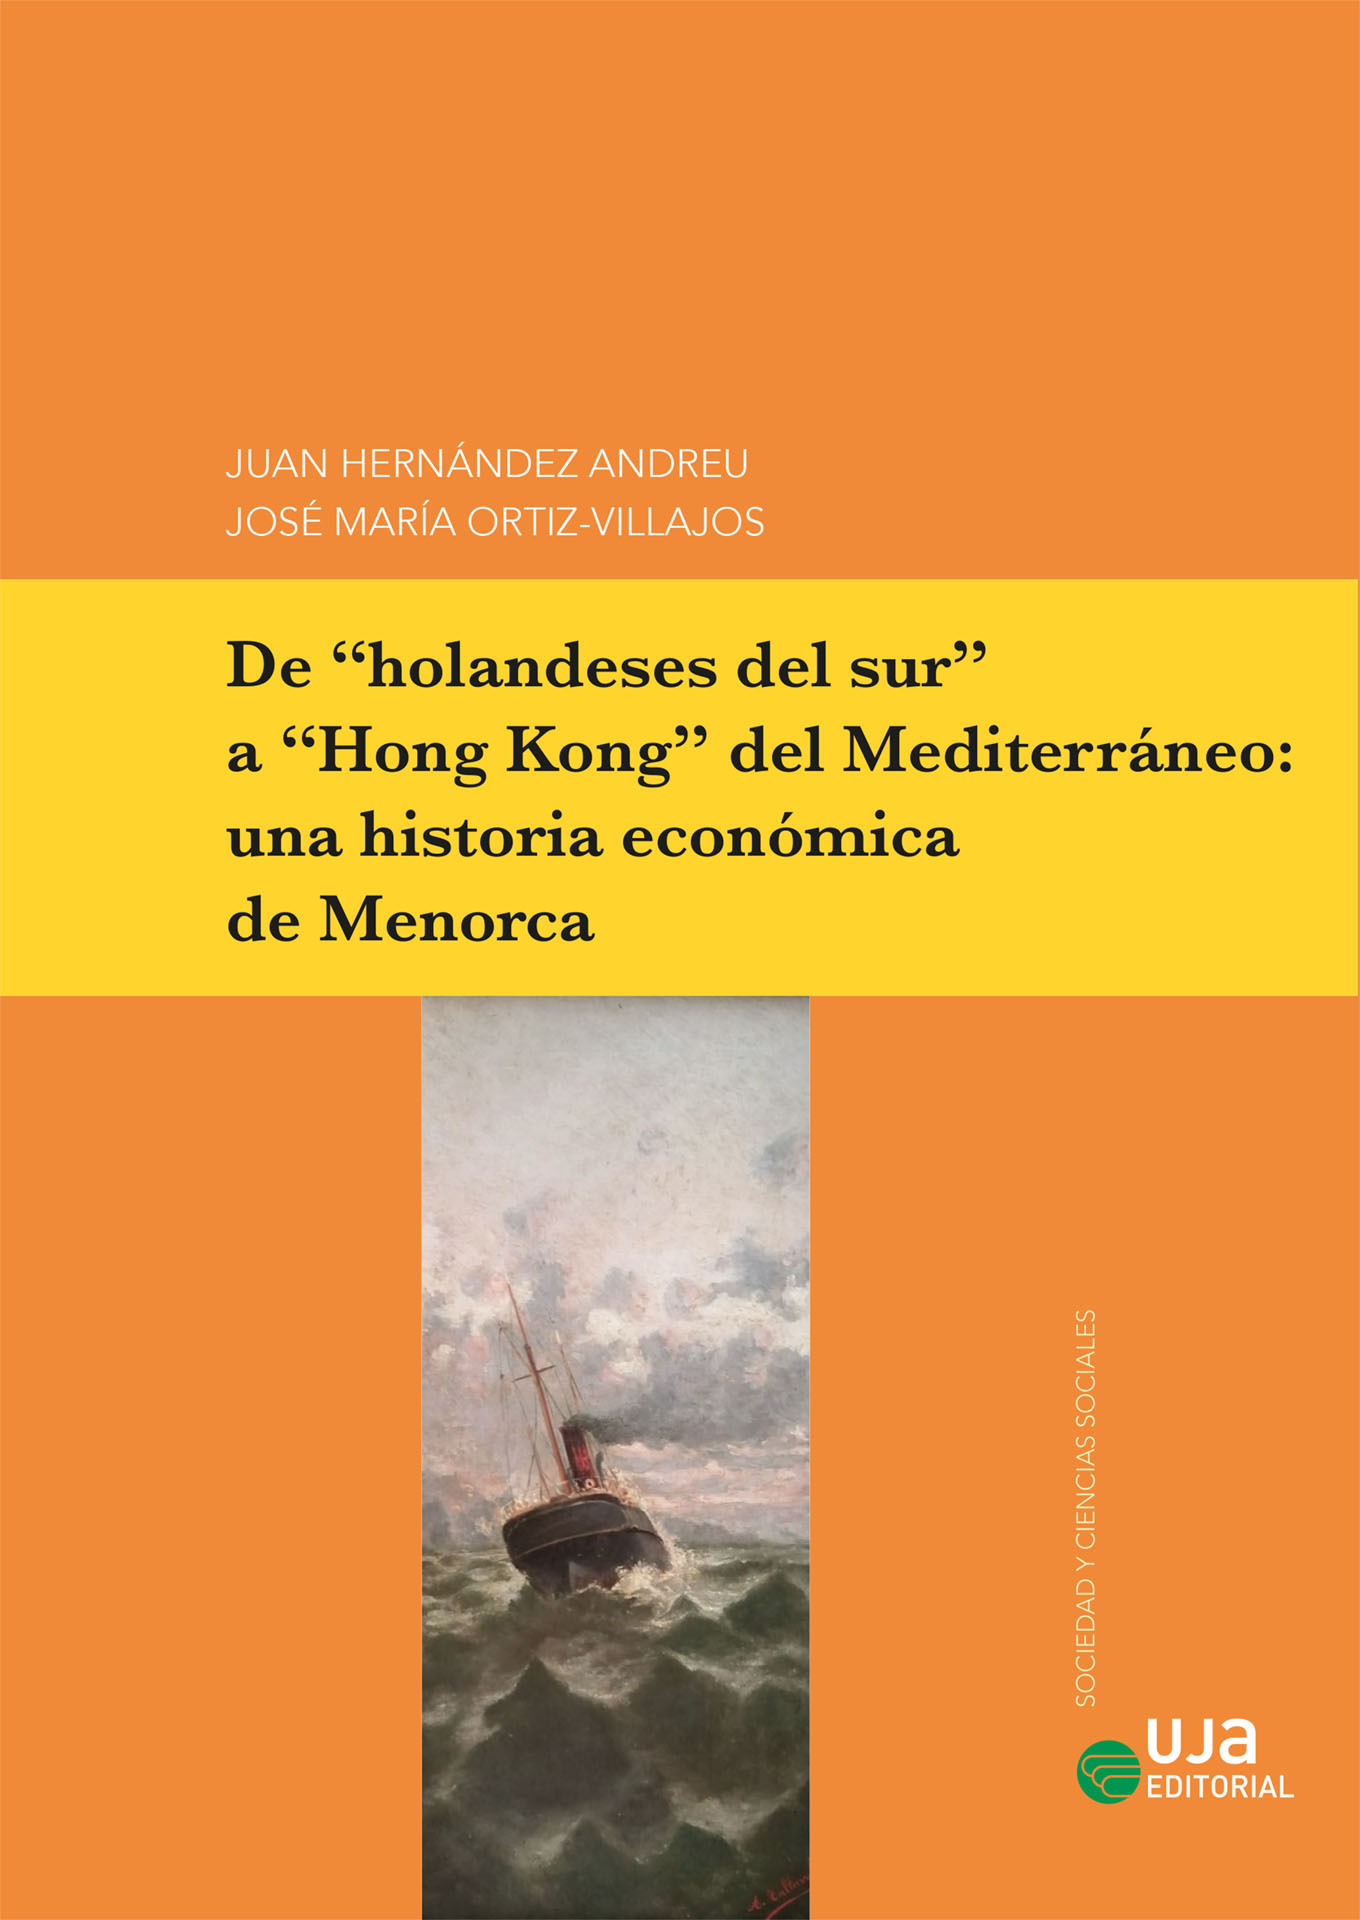 De "holandeses del sur" a "Hong Kong" del Mediterráneo